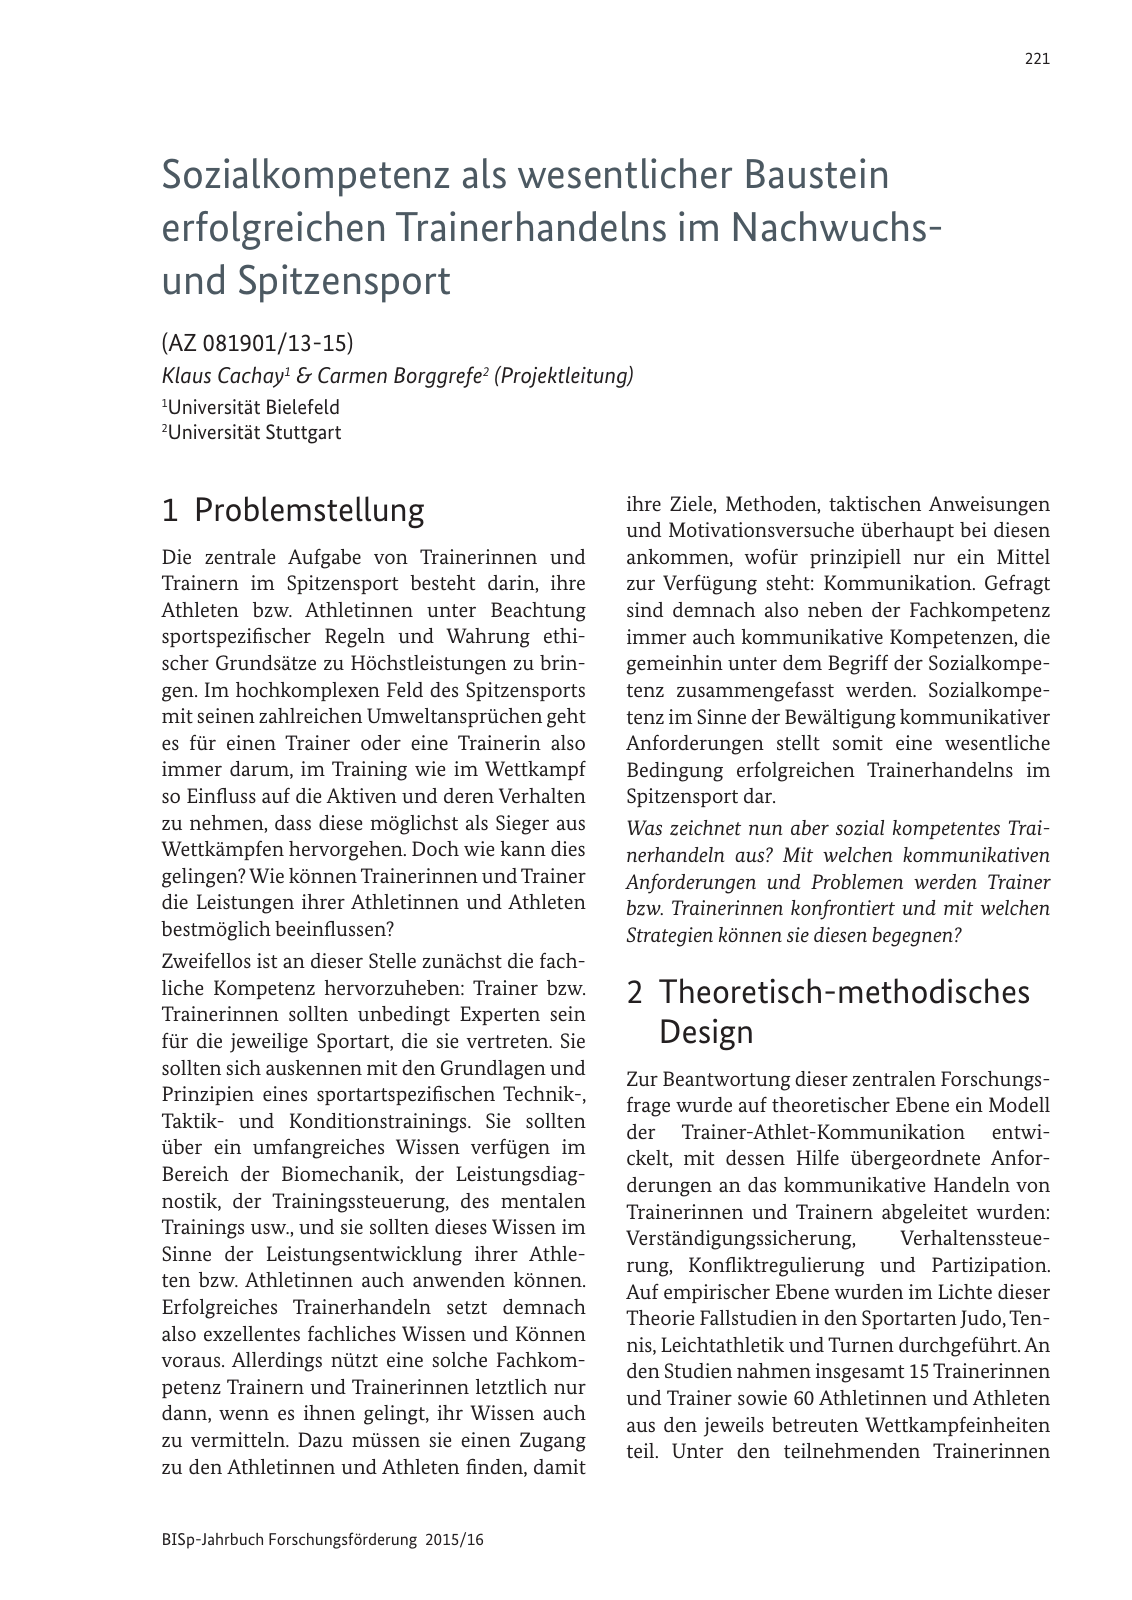 Vorschau BISp-Jahrbuch Forschungsförderung 2015/16 Seite 223